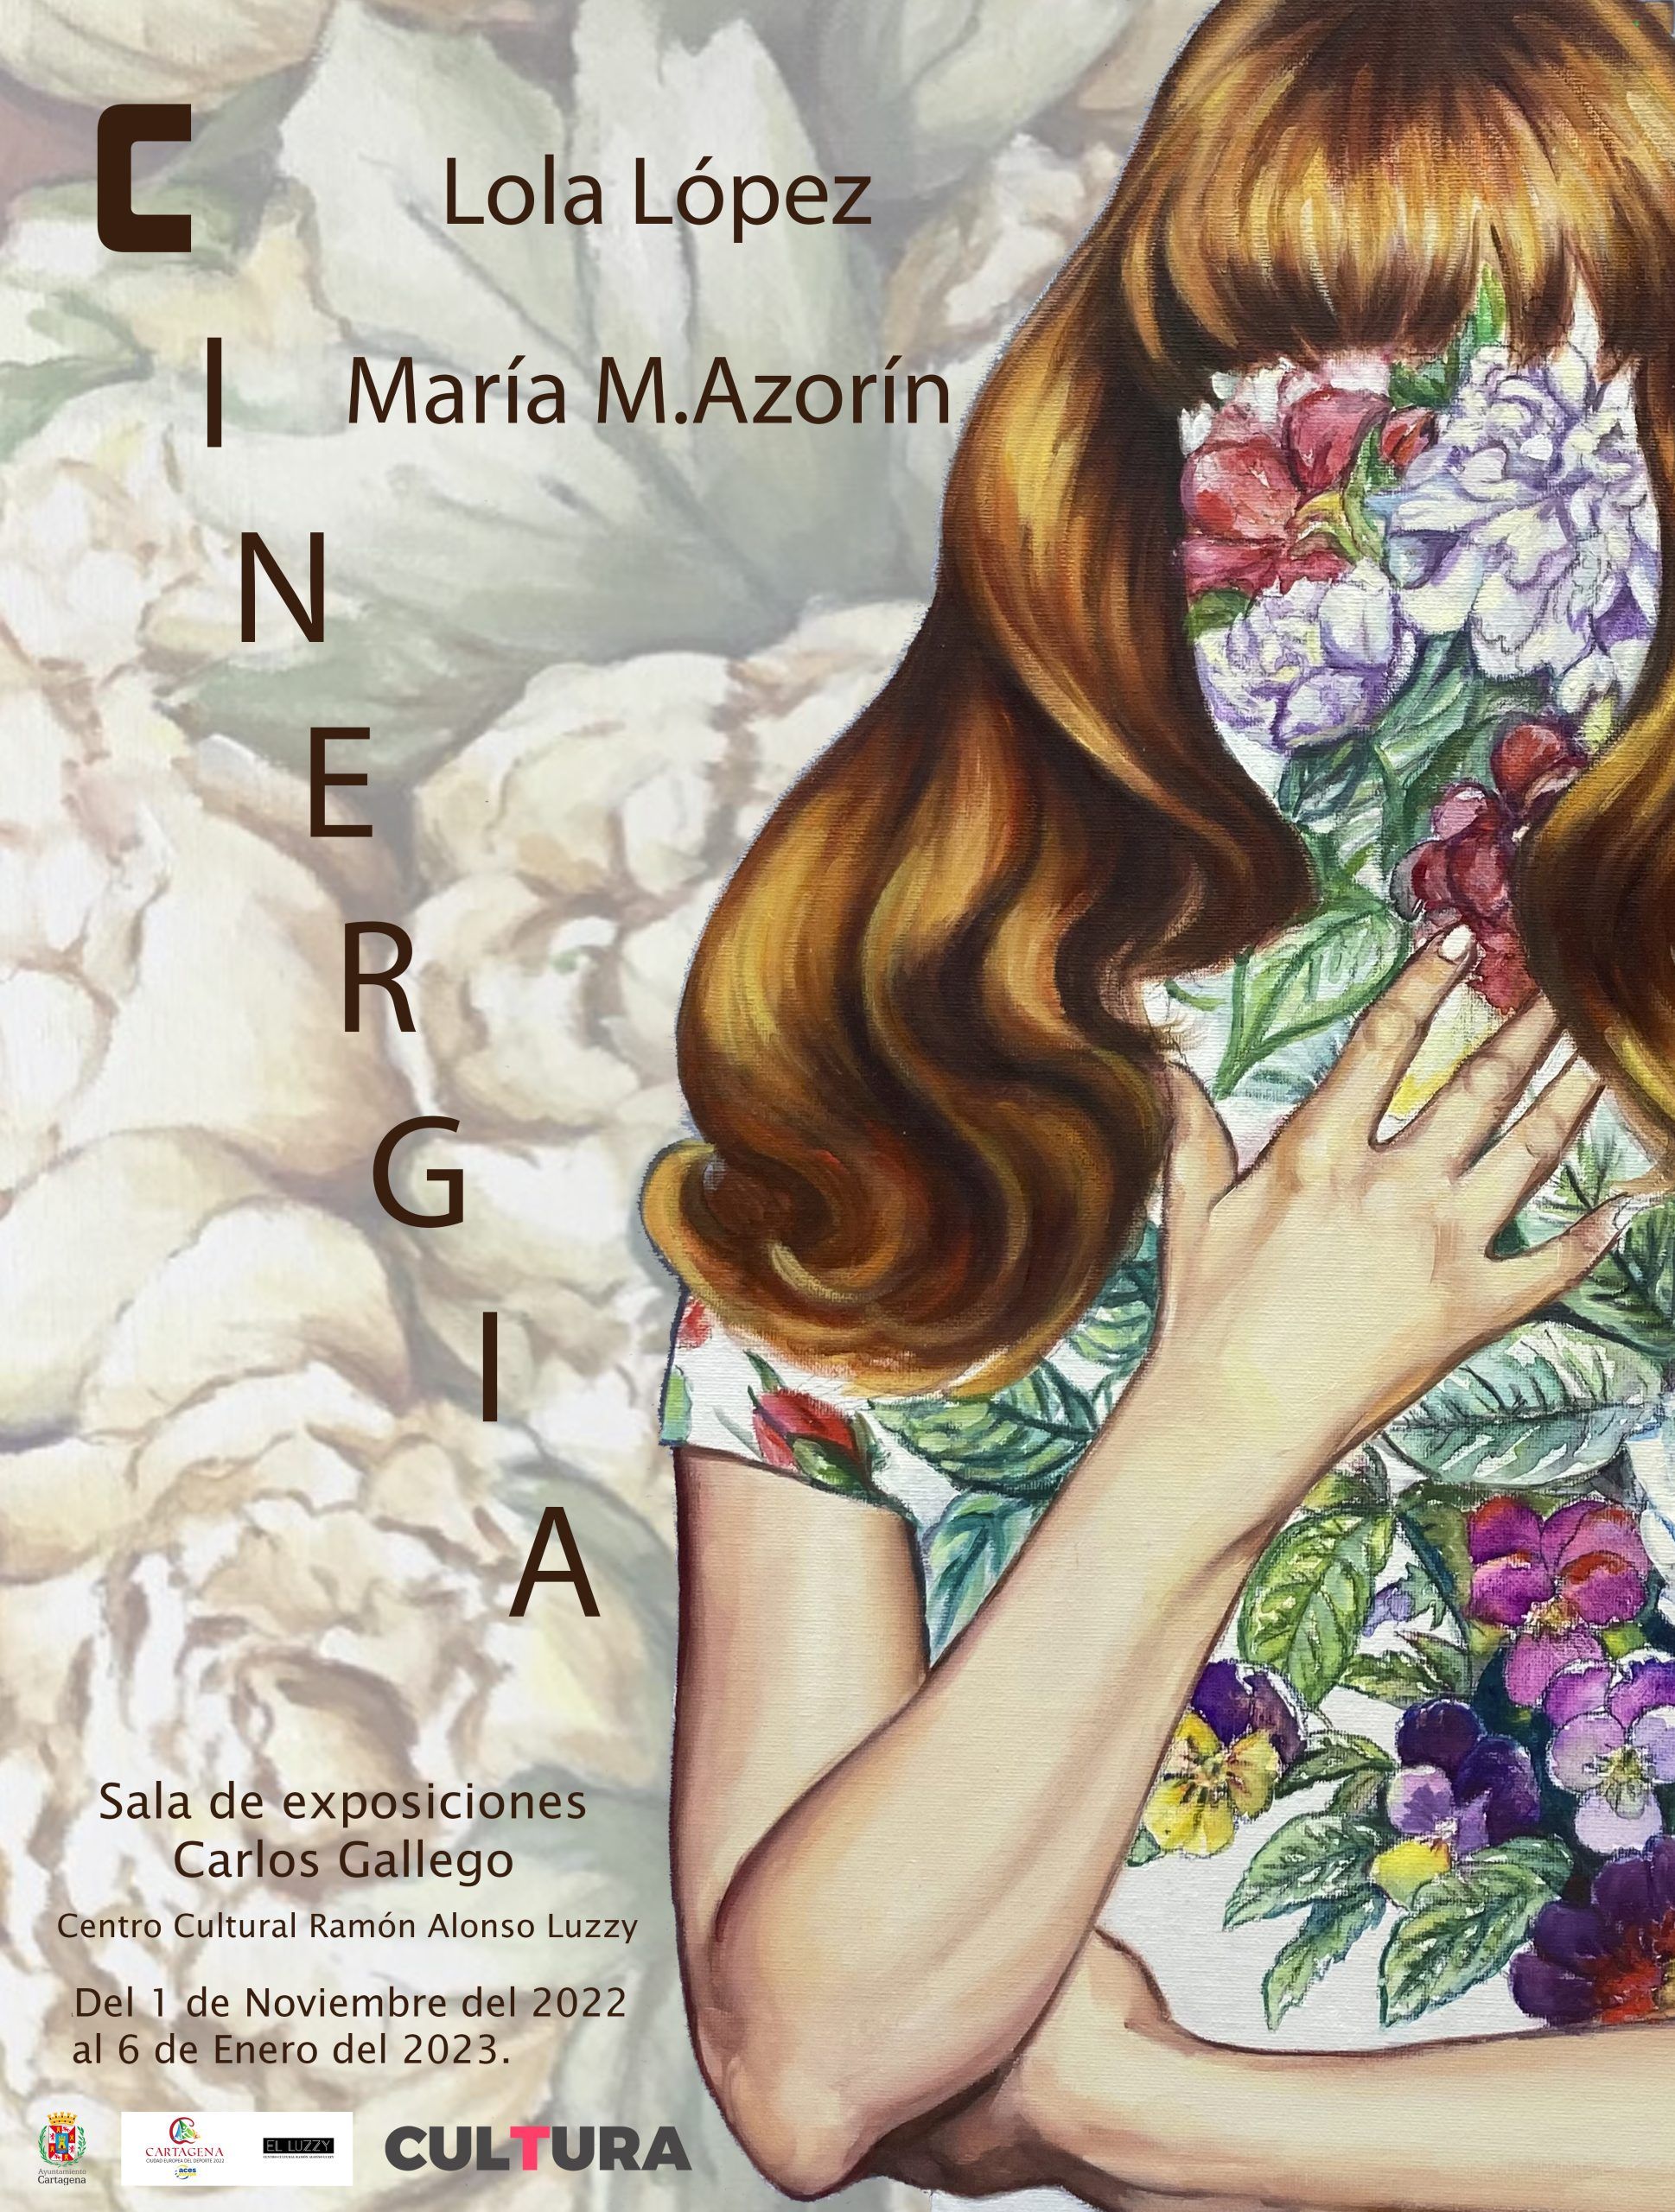 CINERGIA de Lola López-María M. Azorín (Cartagena) Hasta el 6 enero